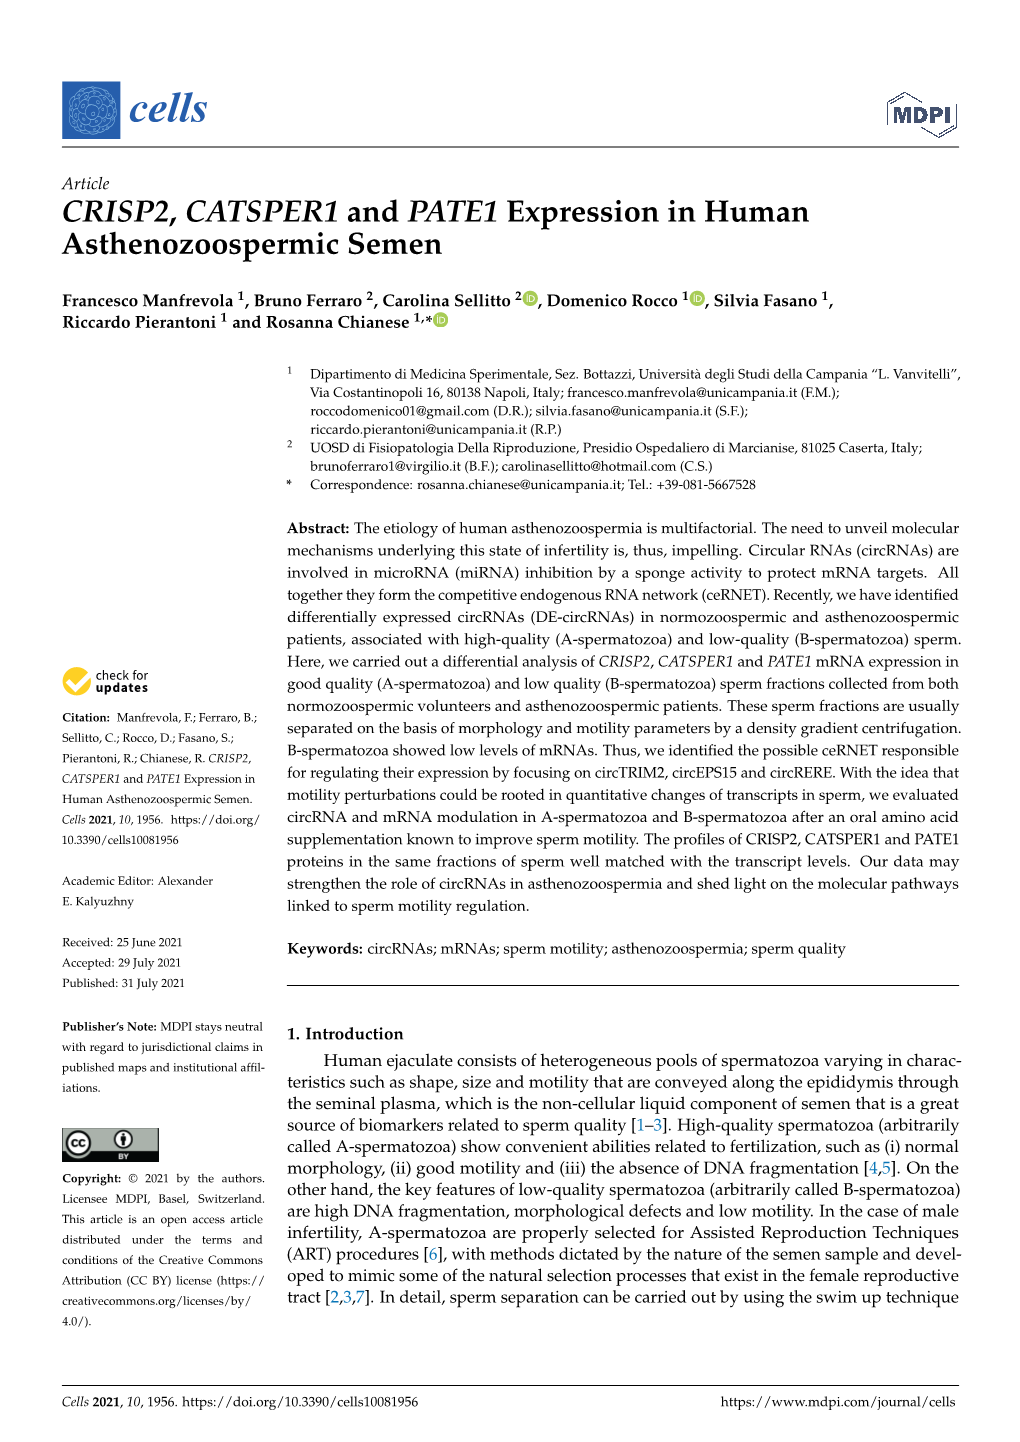 CRISP2, CATSPER1 and PATE1 Expression in Human Asthenozoospermic Semen